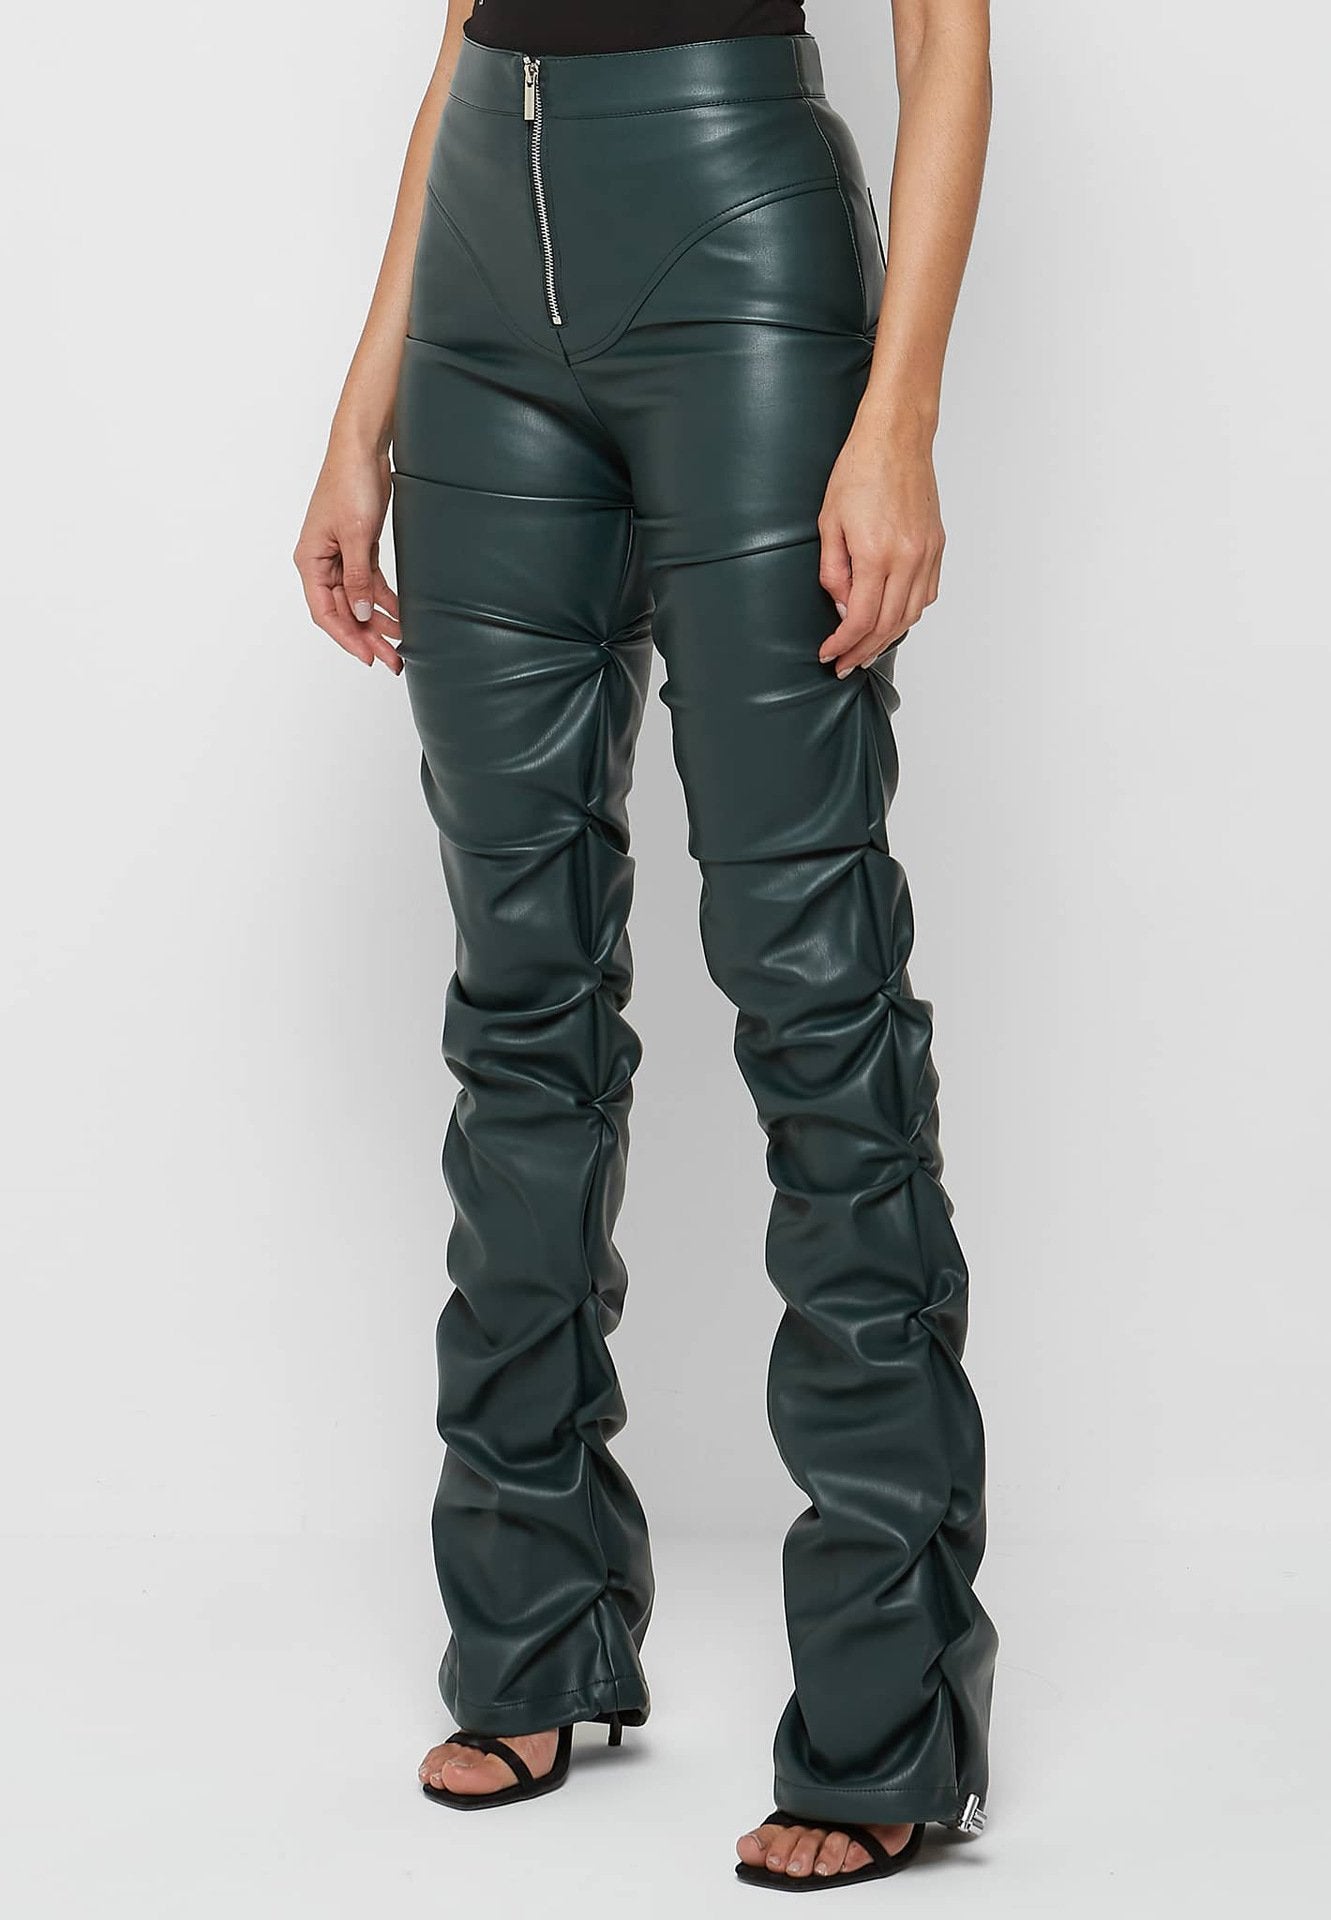 Distinctive Skinny Pleated Leather Pants